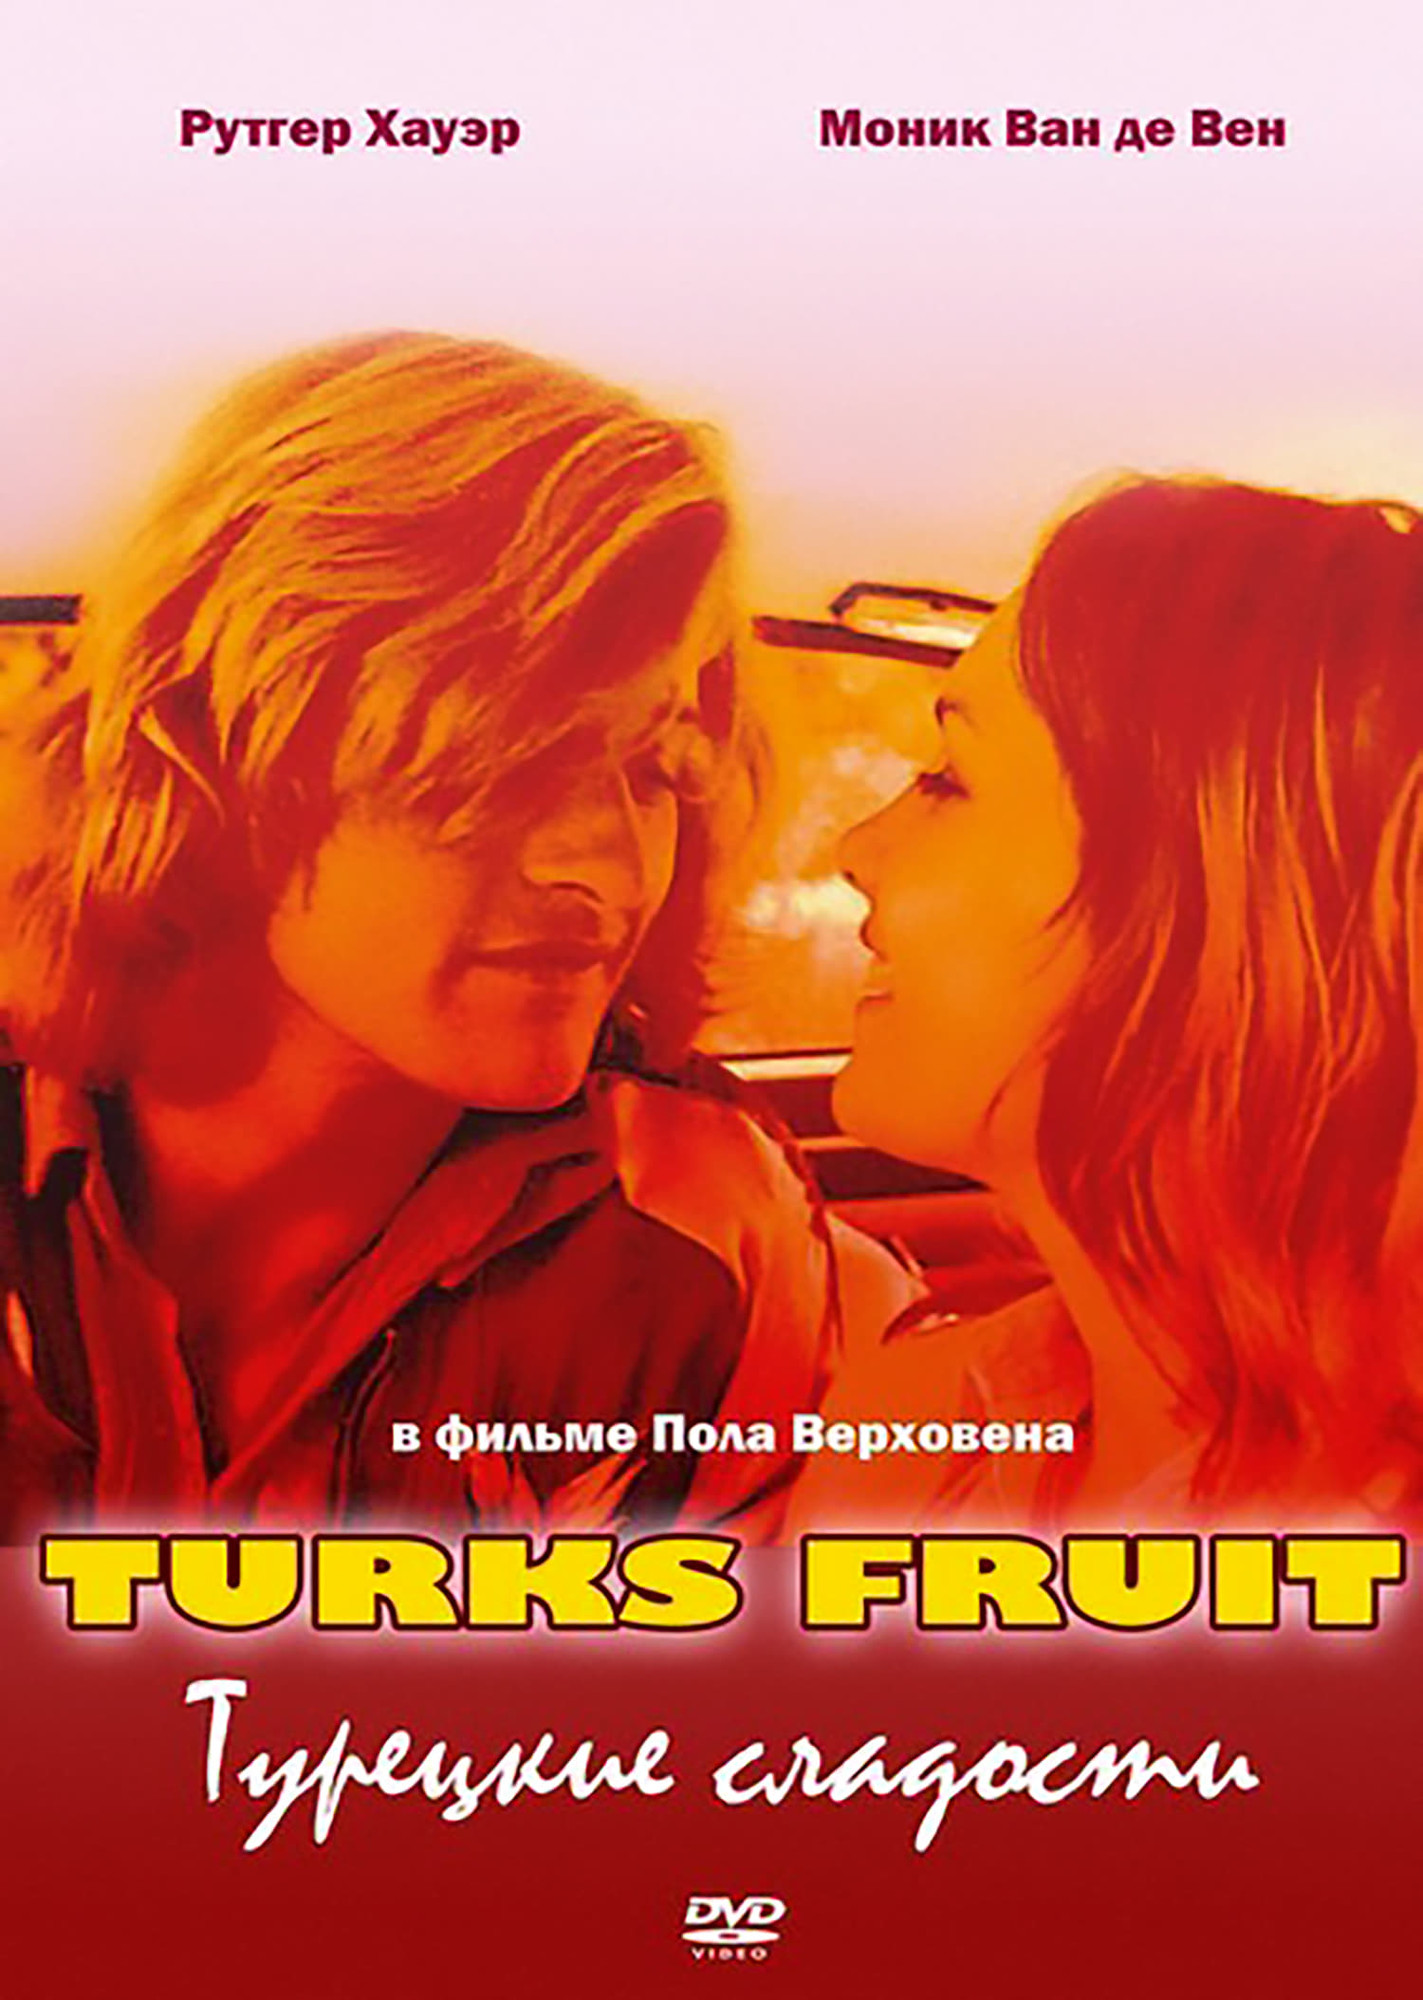 Турецкие сладости / Необузданный нрав / Wild Intent / Turks fruit. 